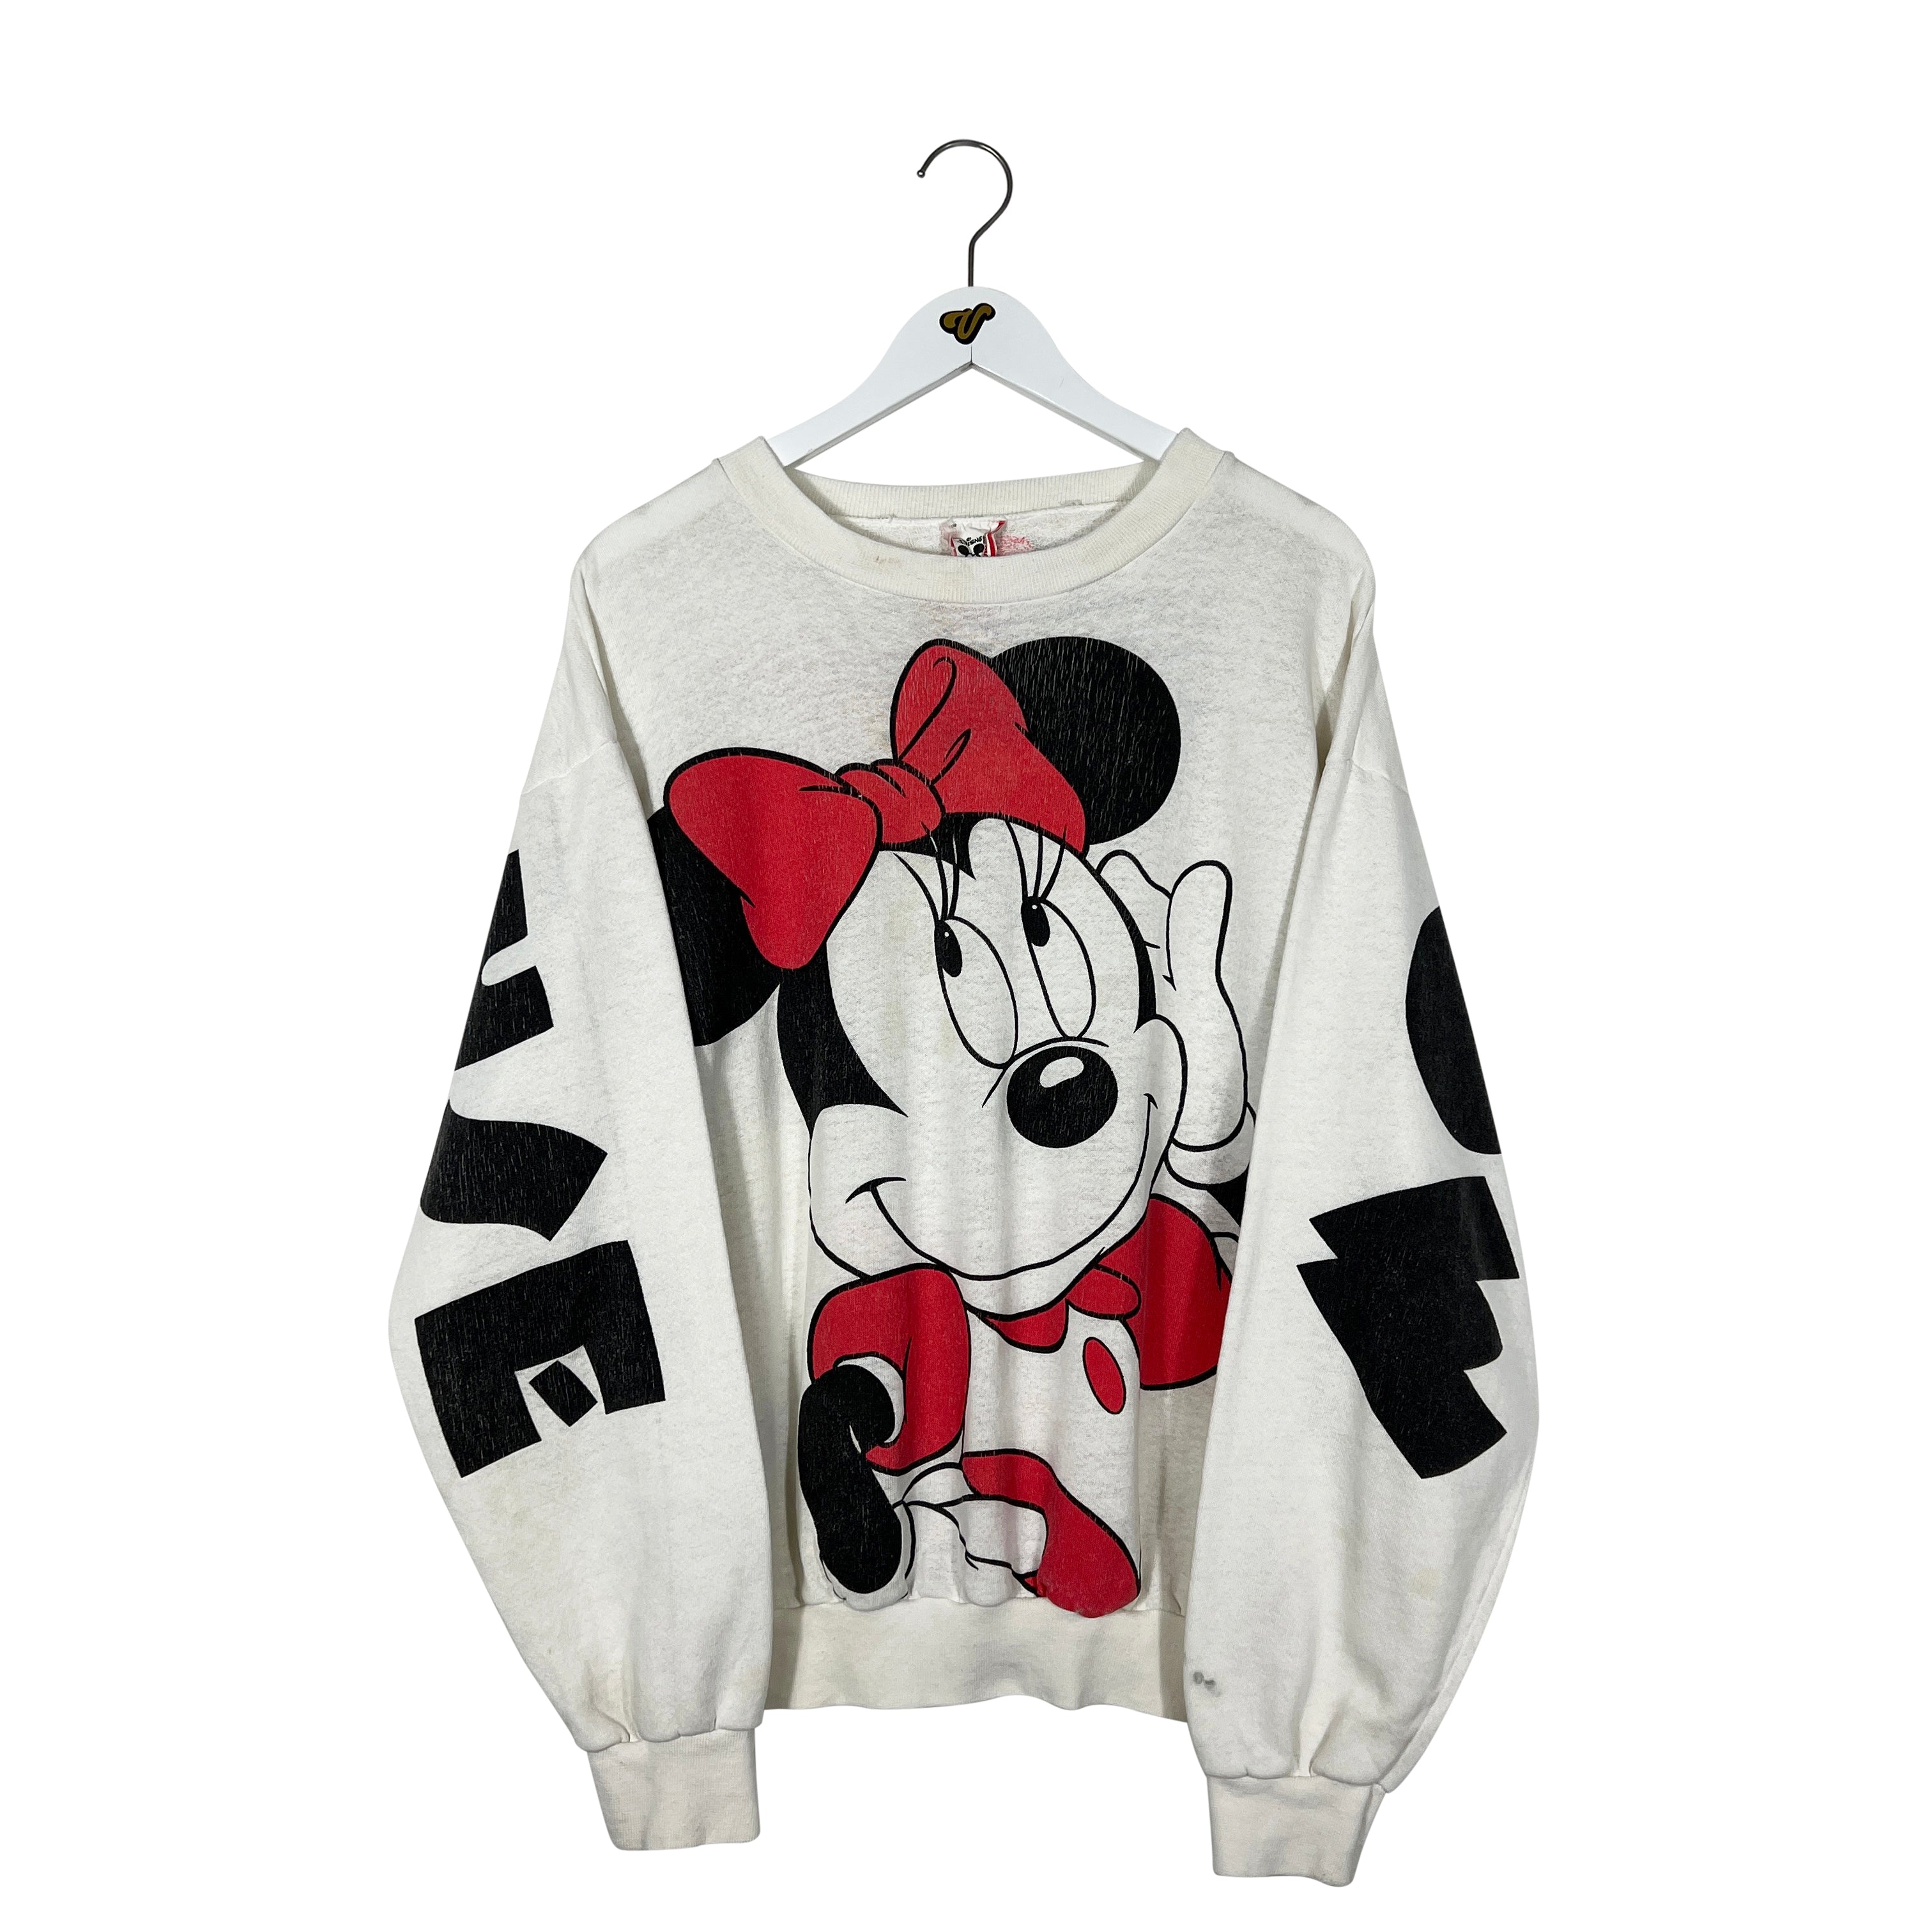 Vintage Disney Minnie Mouse Crewneck Sweatshirt - Men's Large